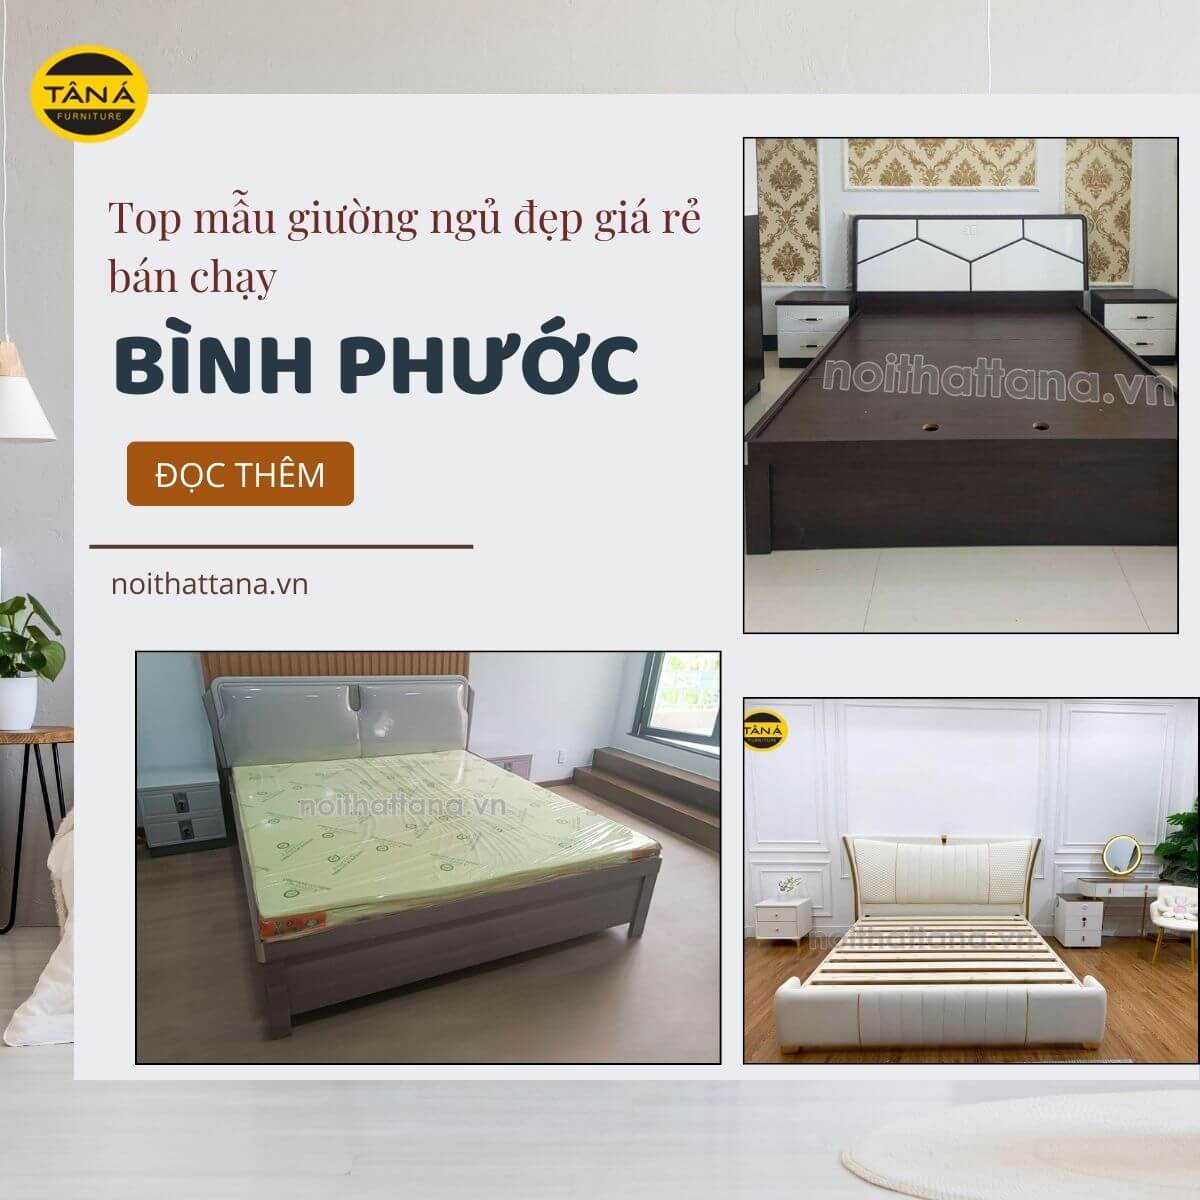 Top mẫu giường ngủ đẹp giá rẻ ở Bình Phước